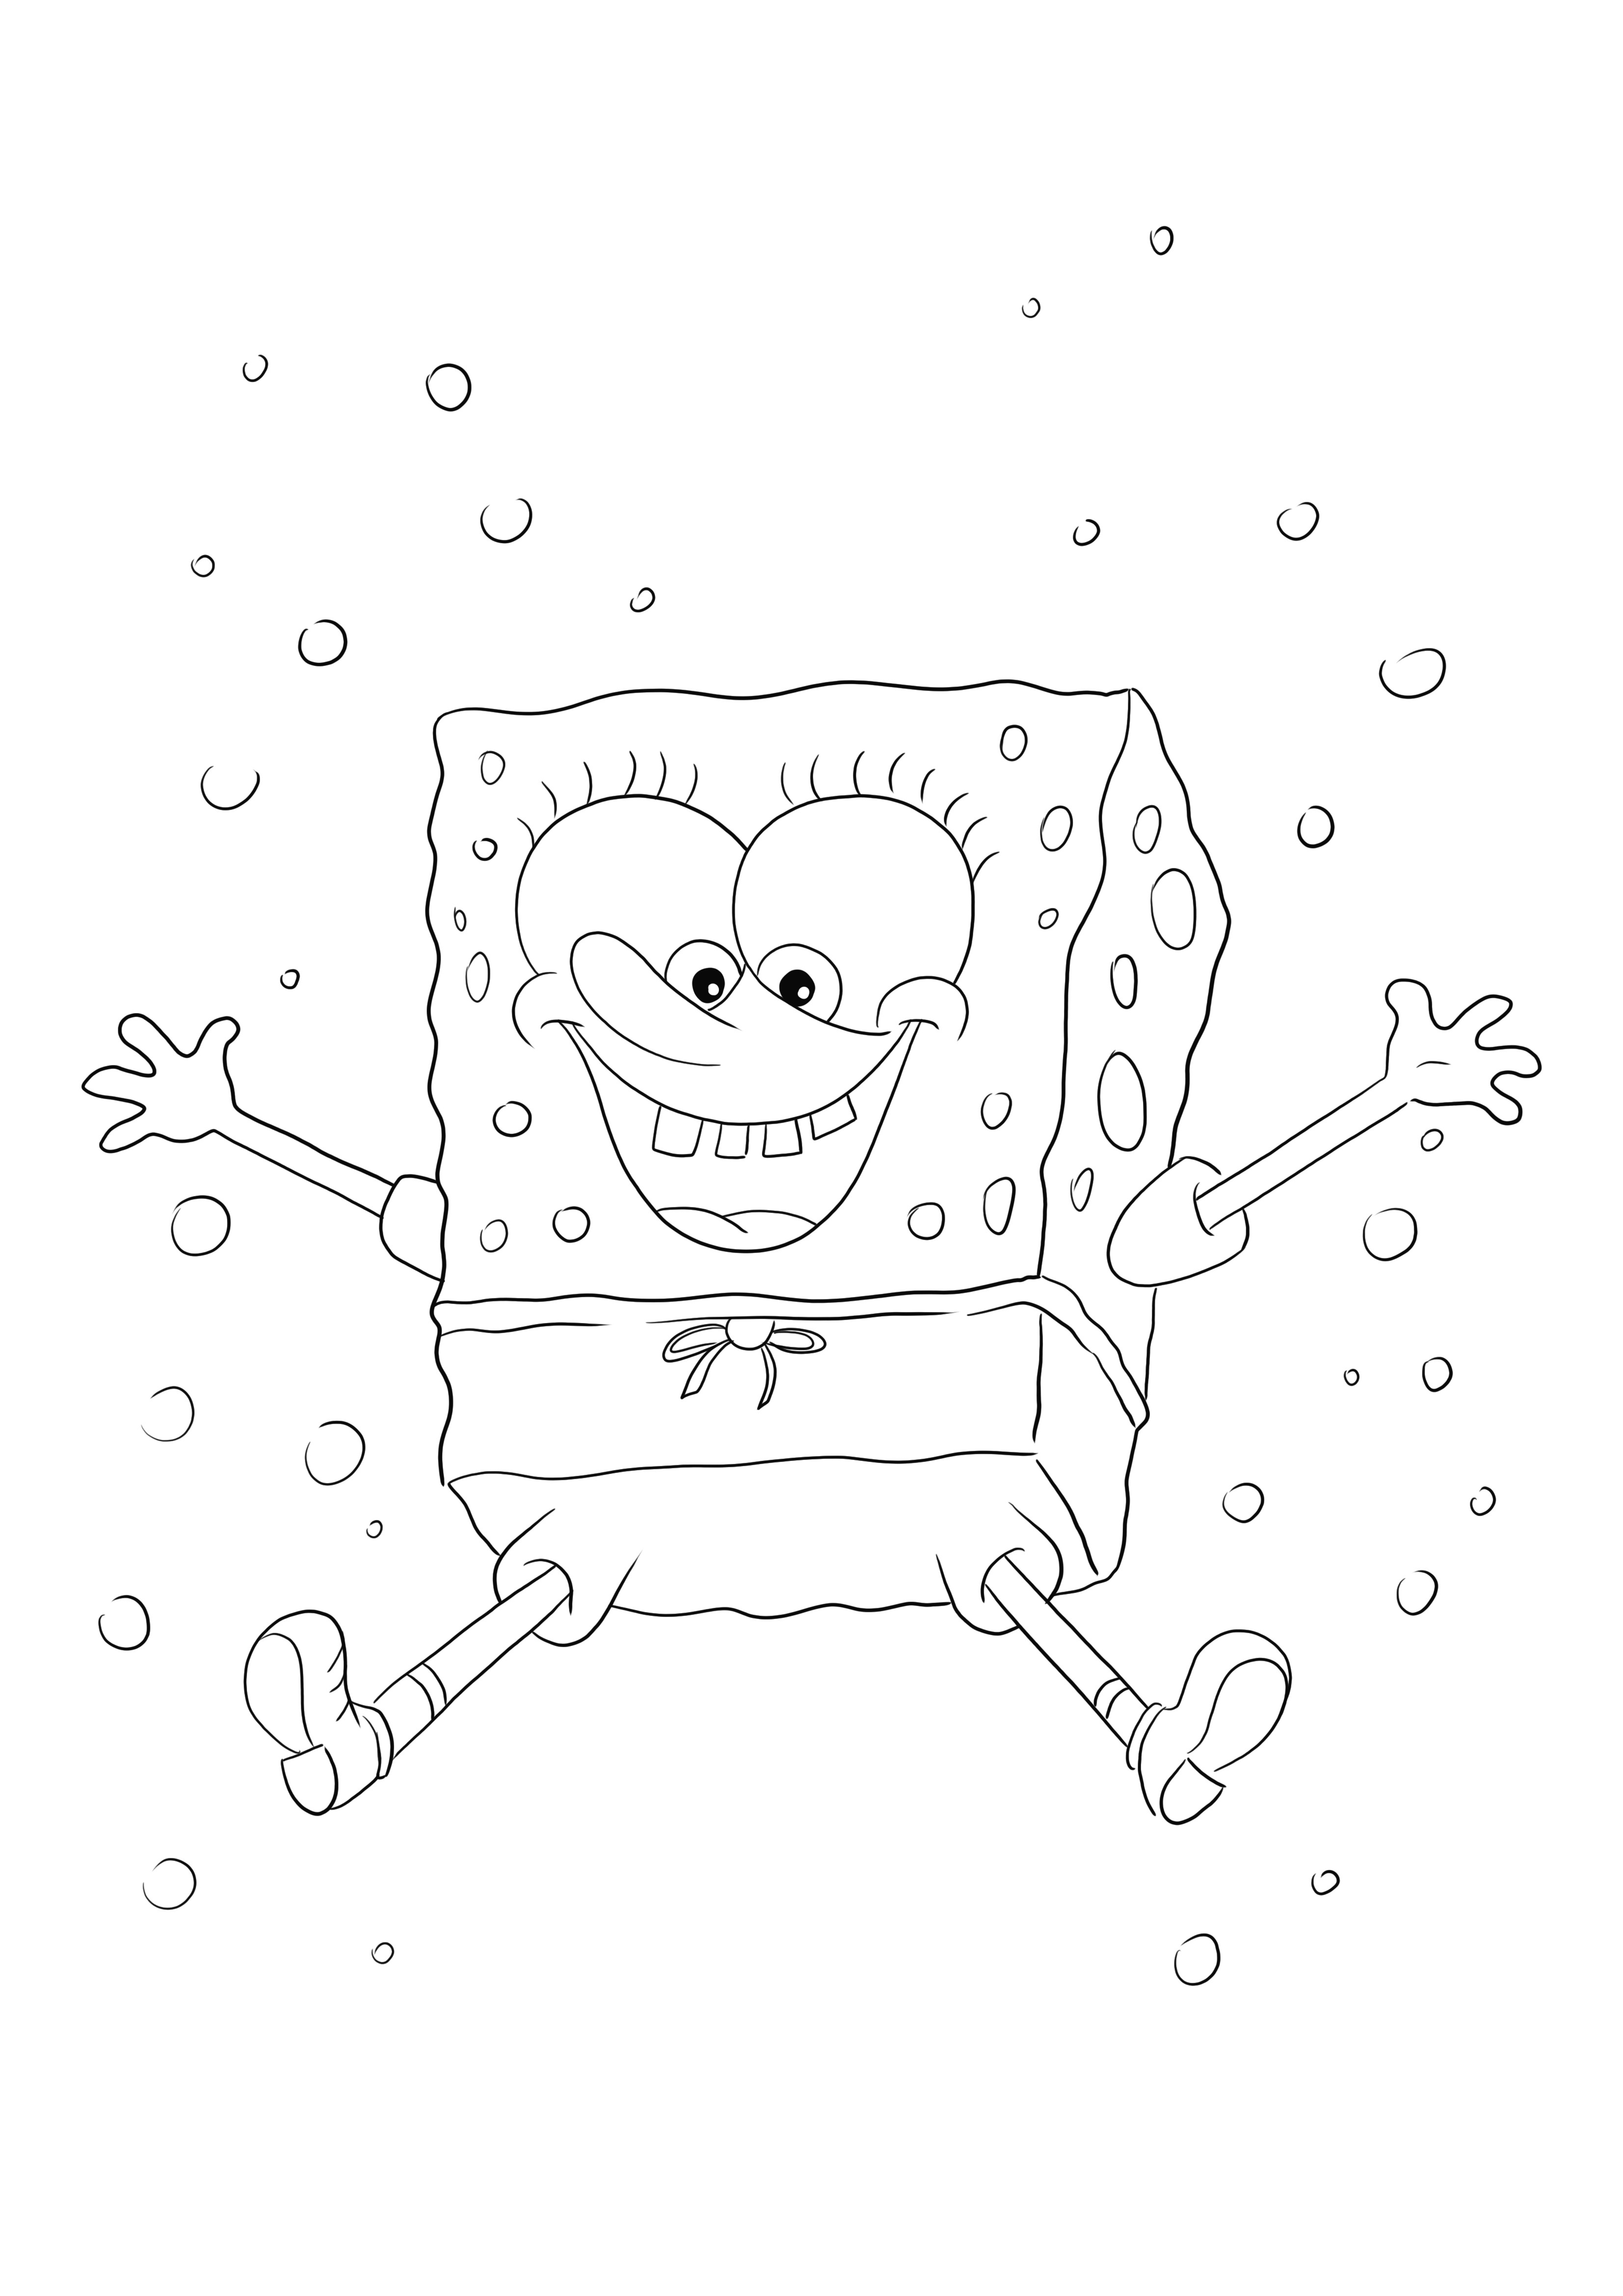 Happy dancing SpongeBob Squarepants gratis untuk mencetak atau mengunduh lembar mewarnai